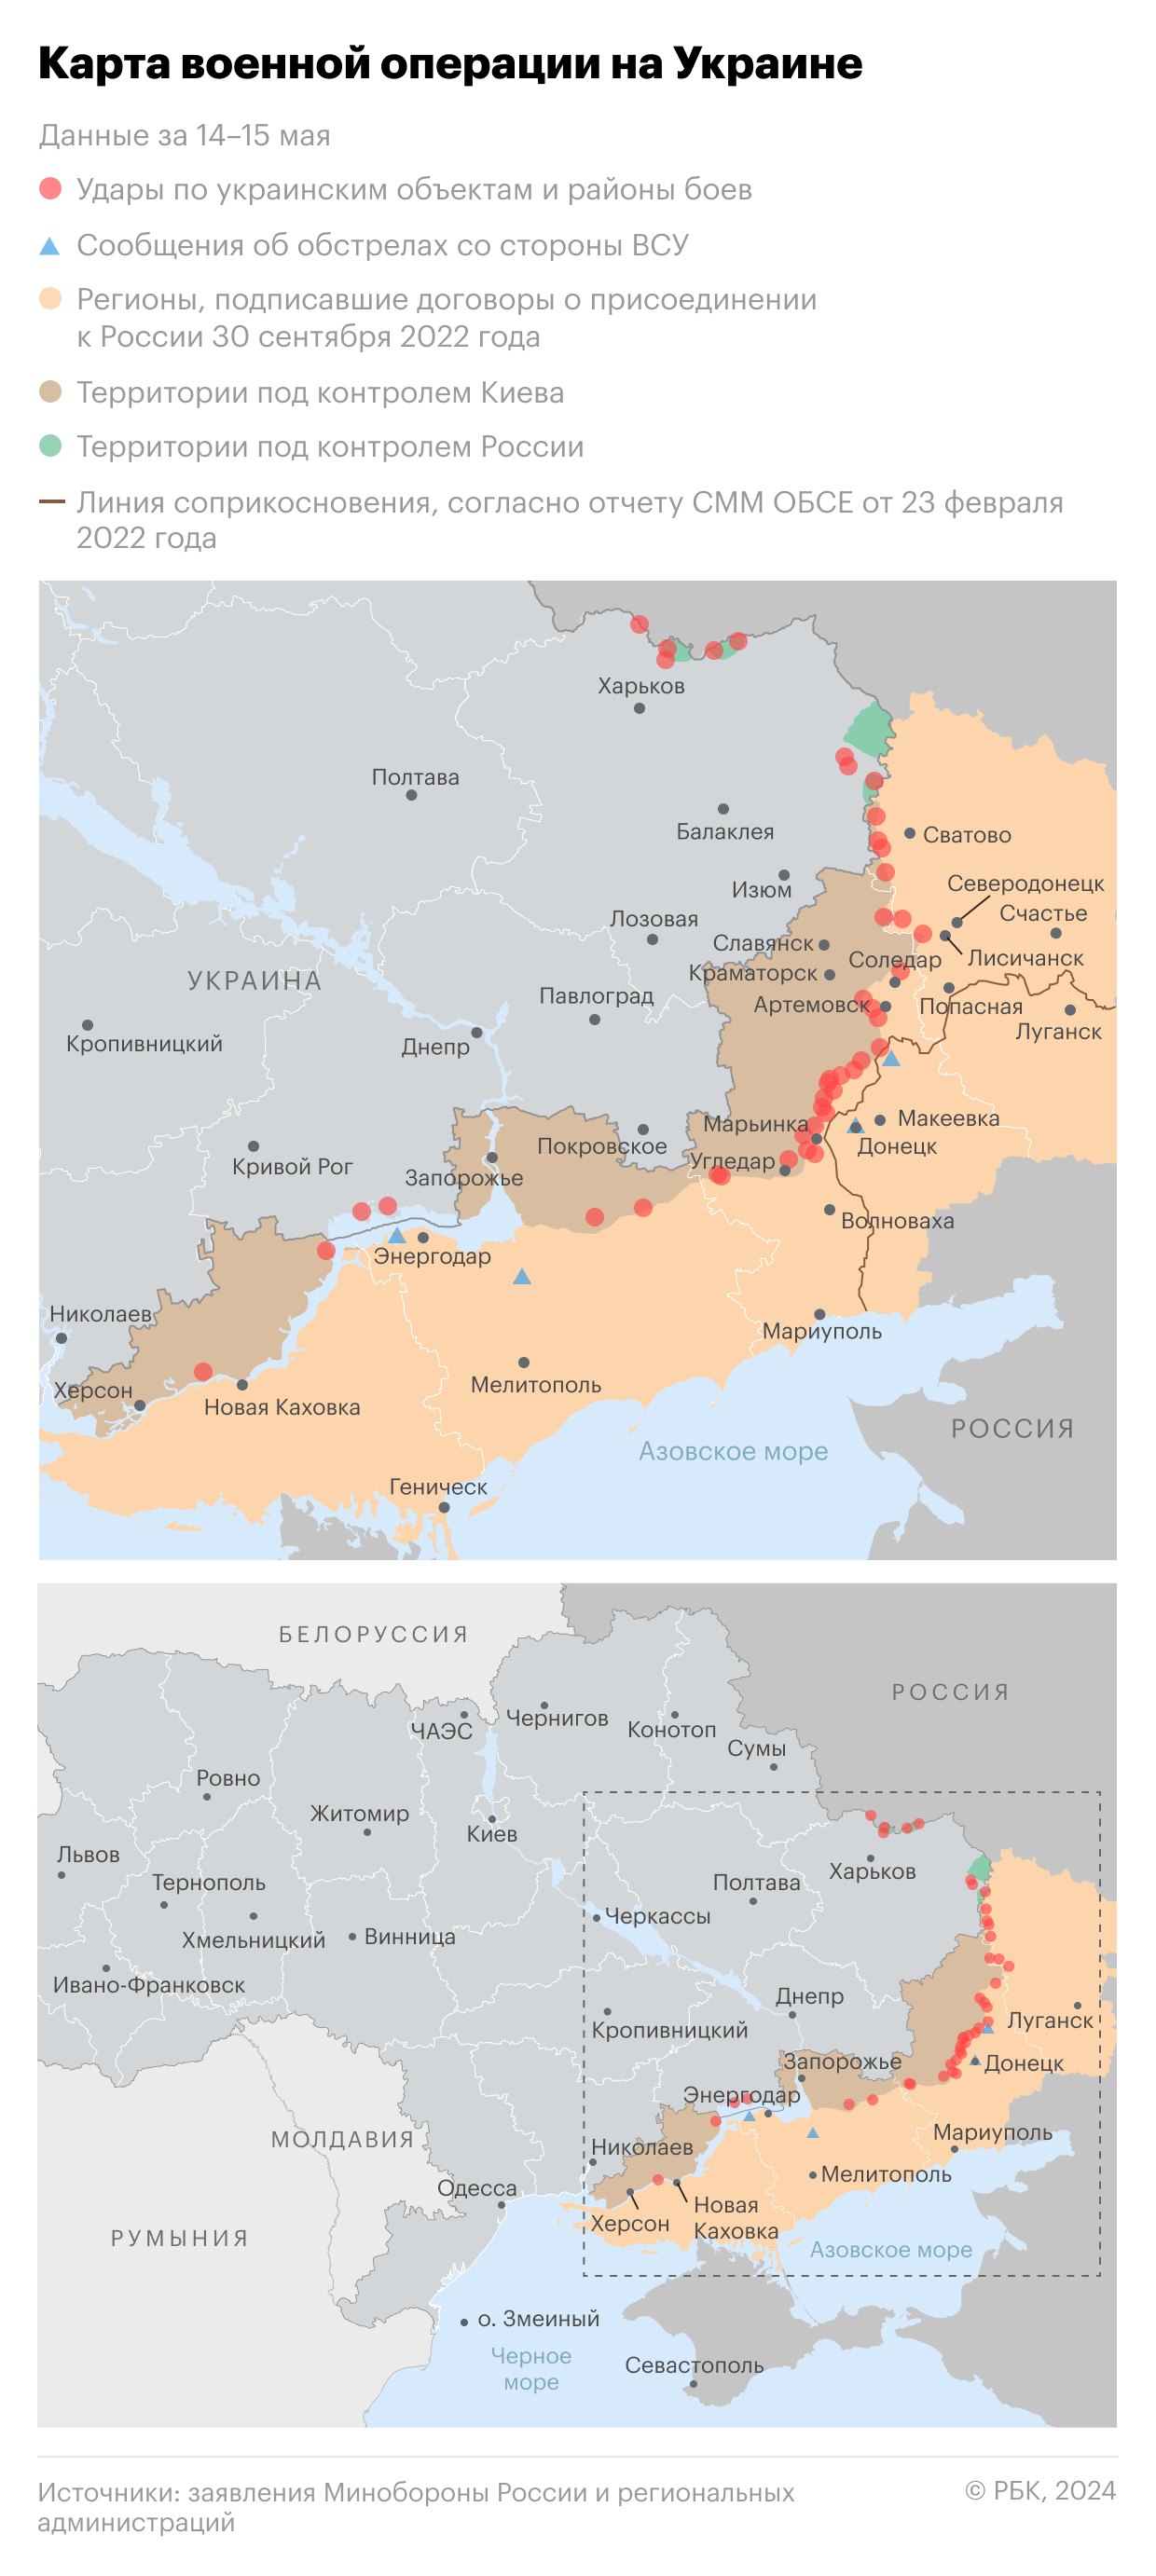 Шойгу исключил участие призывников в военной операции на Украине